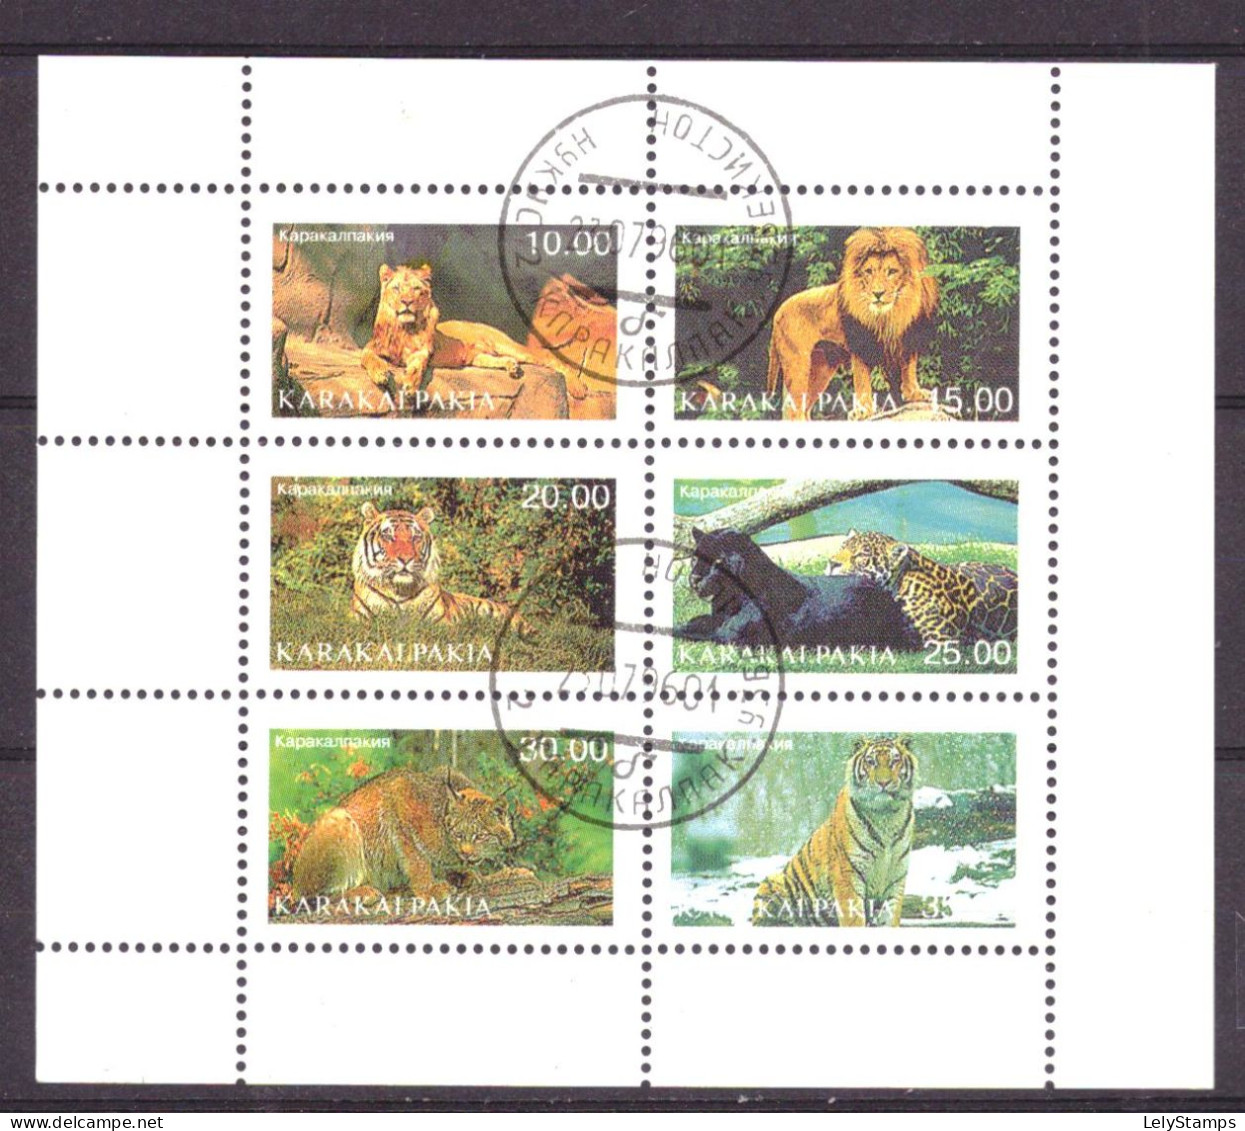 Karakalpakia Local Post Vignette Nature Animals Lions Used - Siberia And Far East